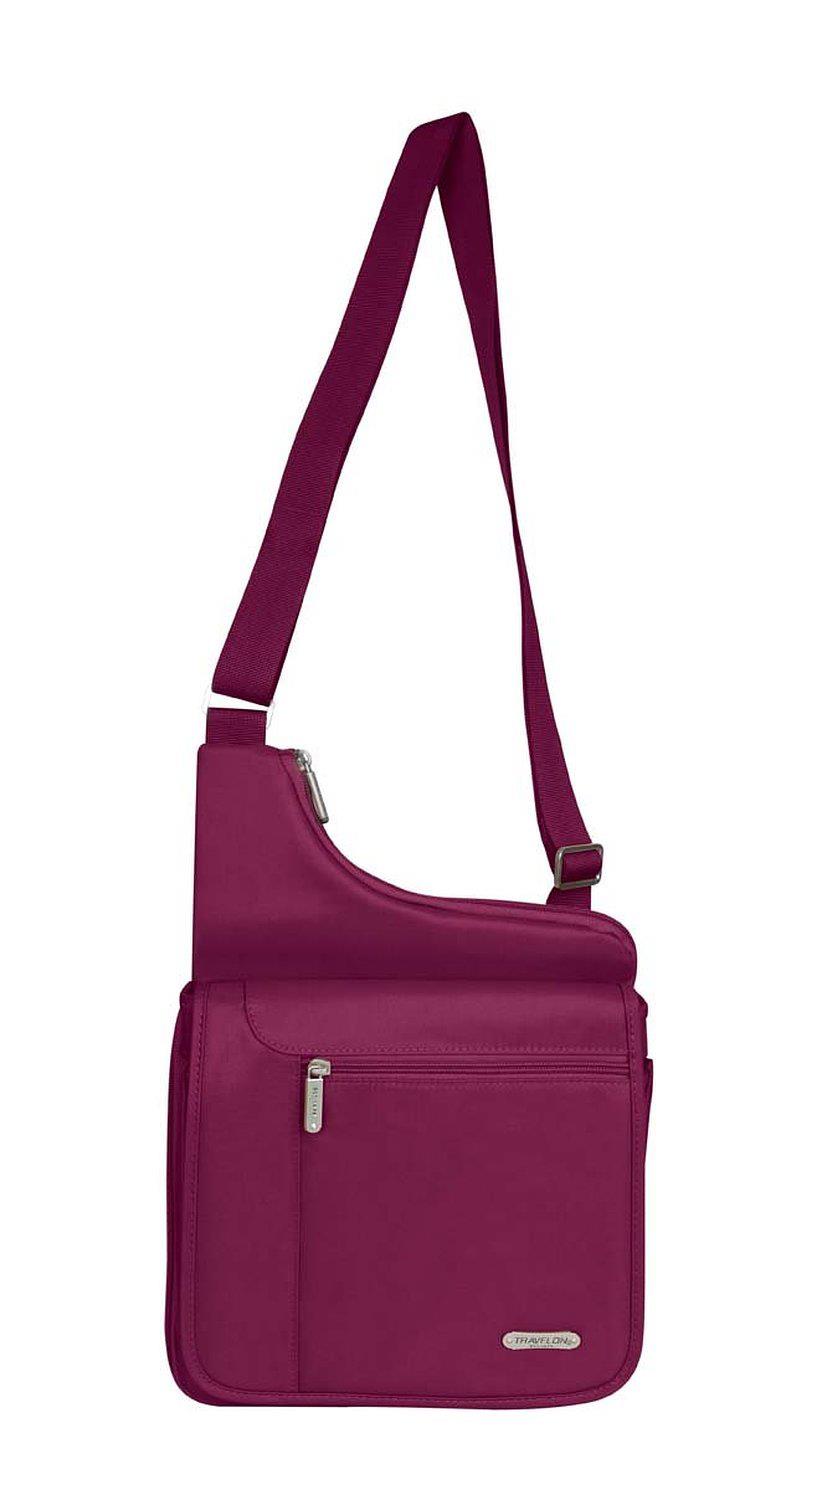 Travelon Large Messenger Style Shoulder Bag, Berry